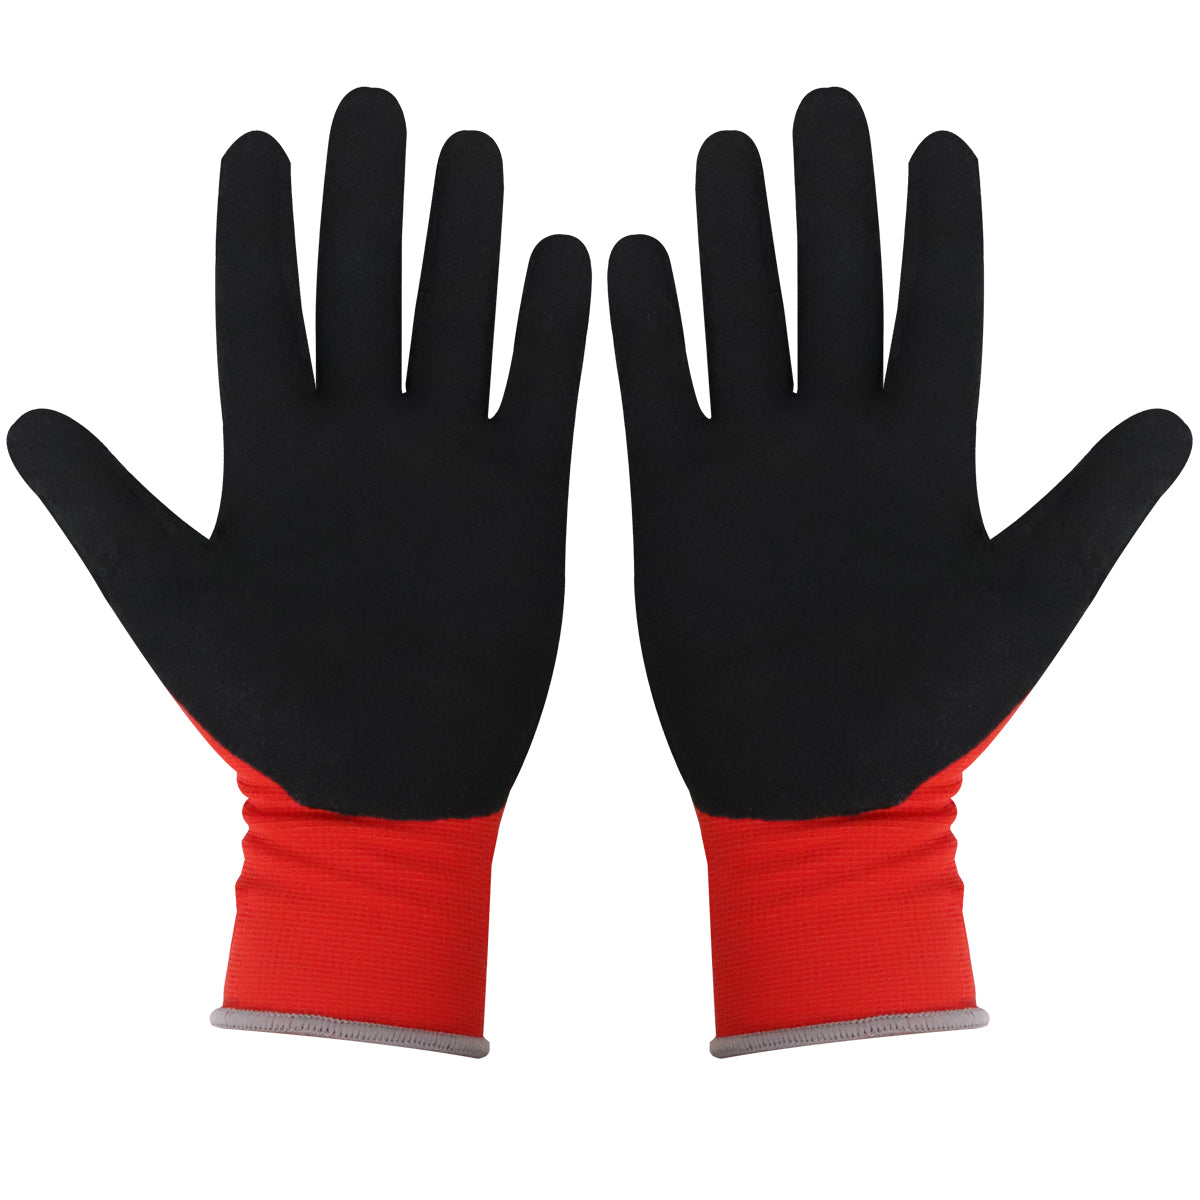 Excel Pro-Series Builder Gloves Red & Black Size L Pack of 48